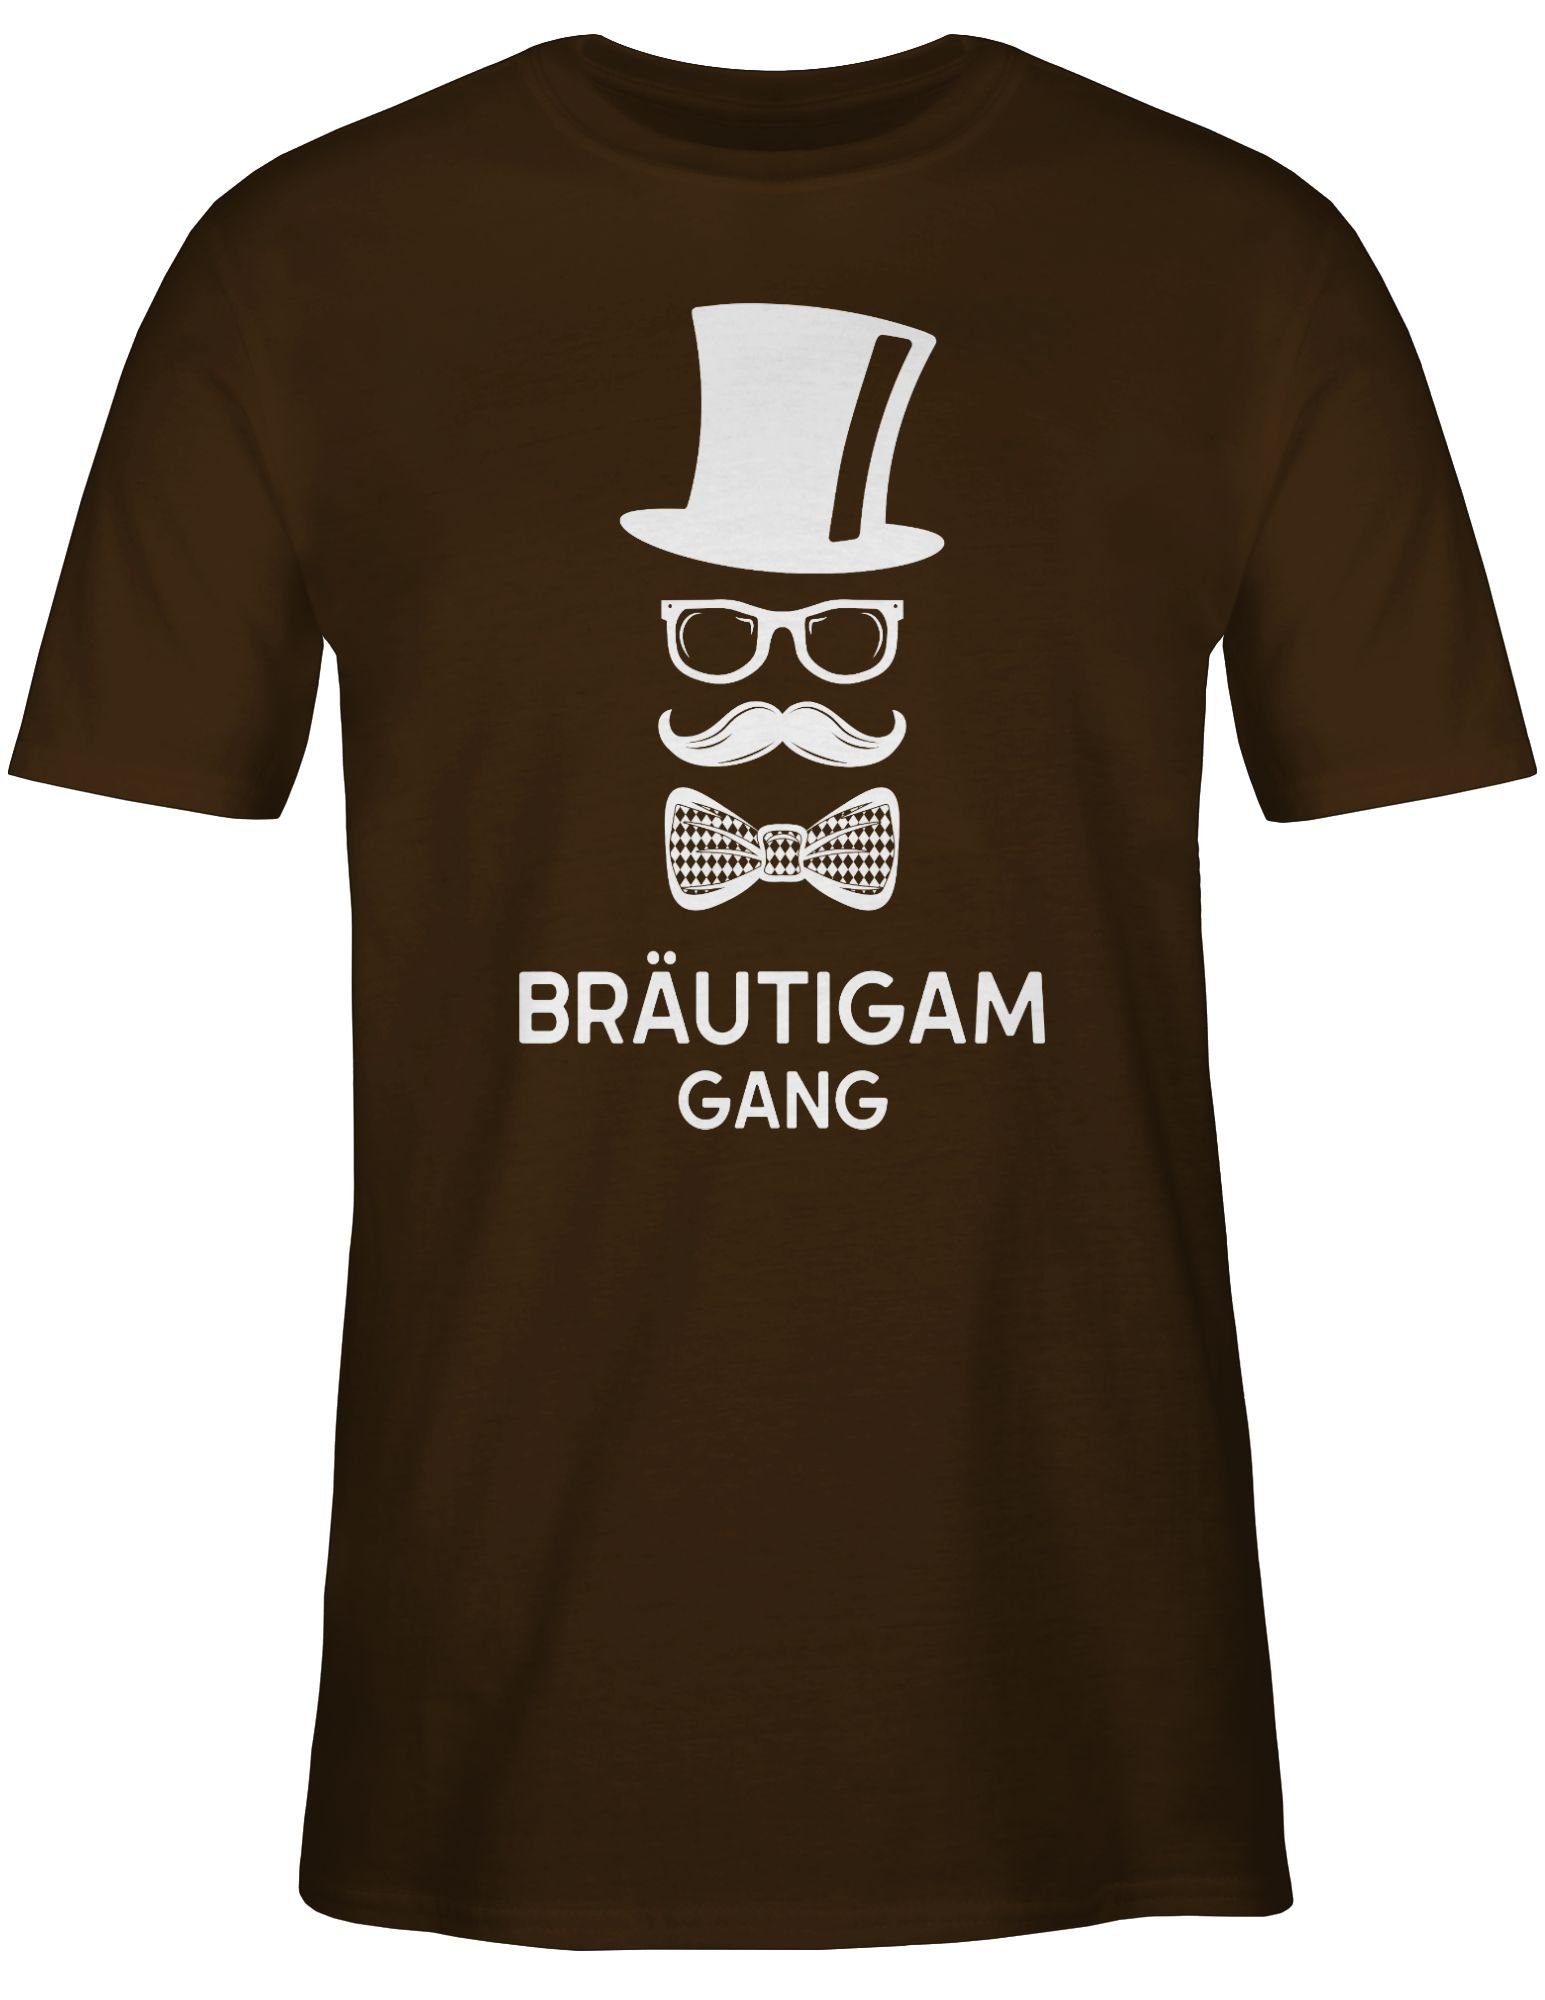 Gang JGA Groom T-Shirt Männer Bräutigam Shirtracer Braun 03 Hipster Team